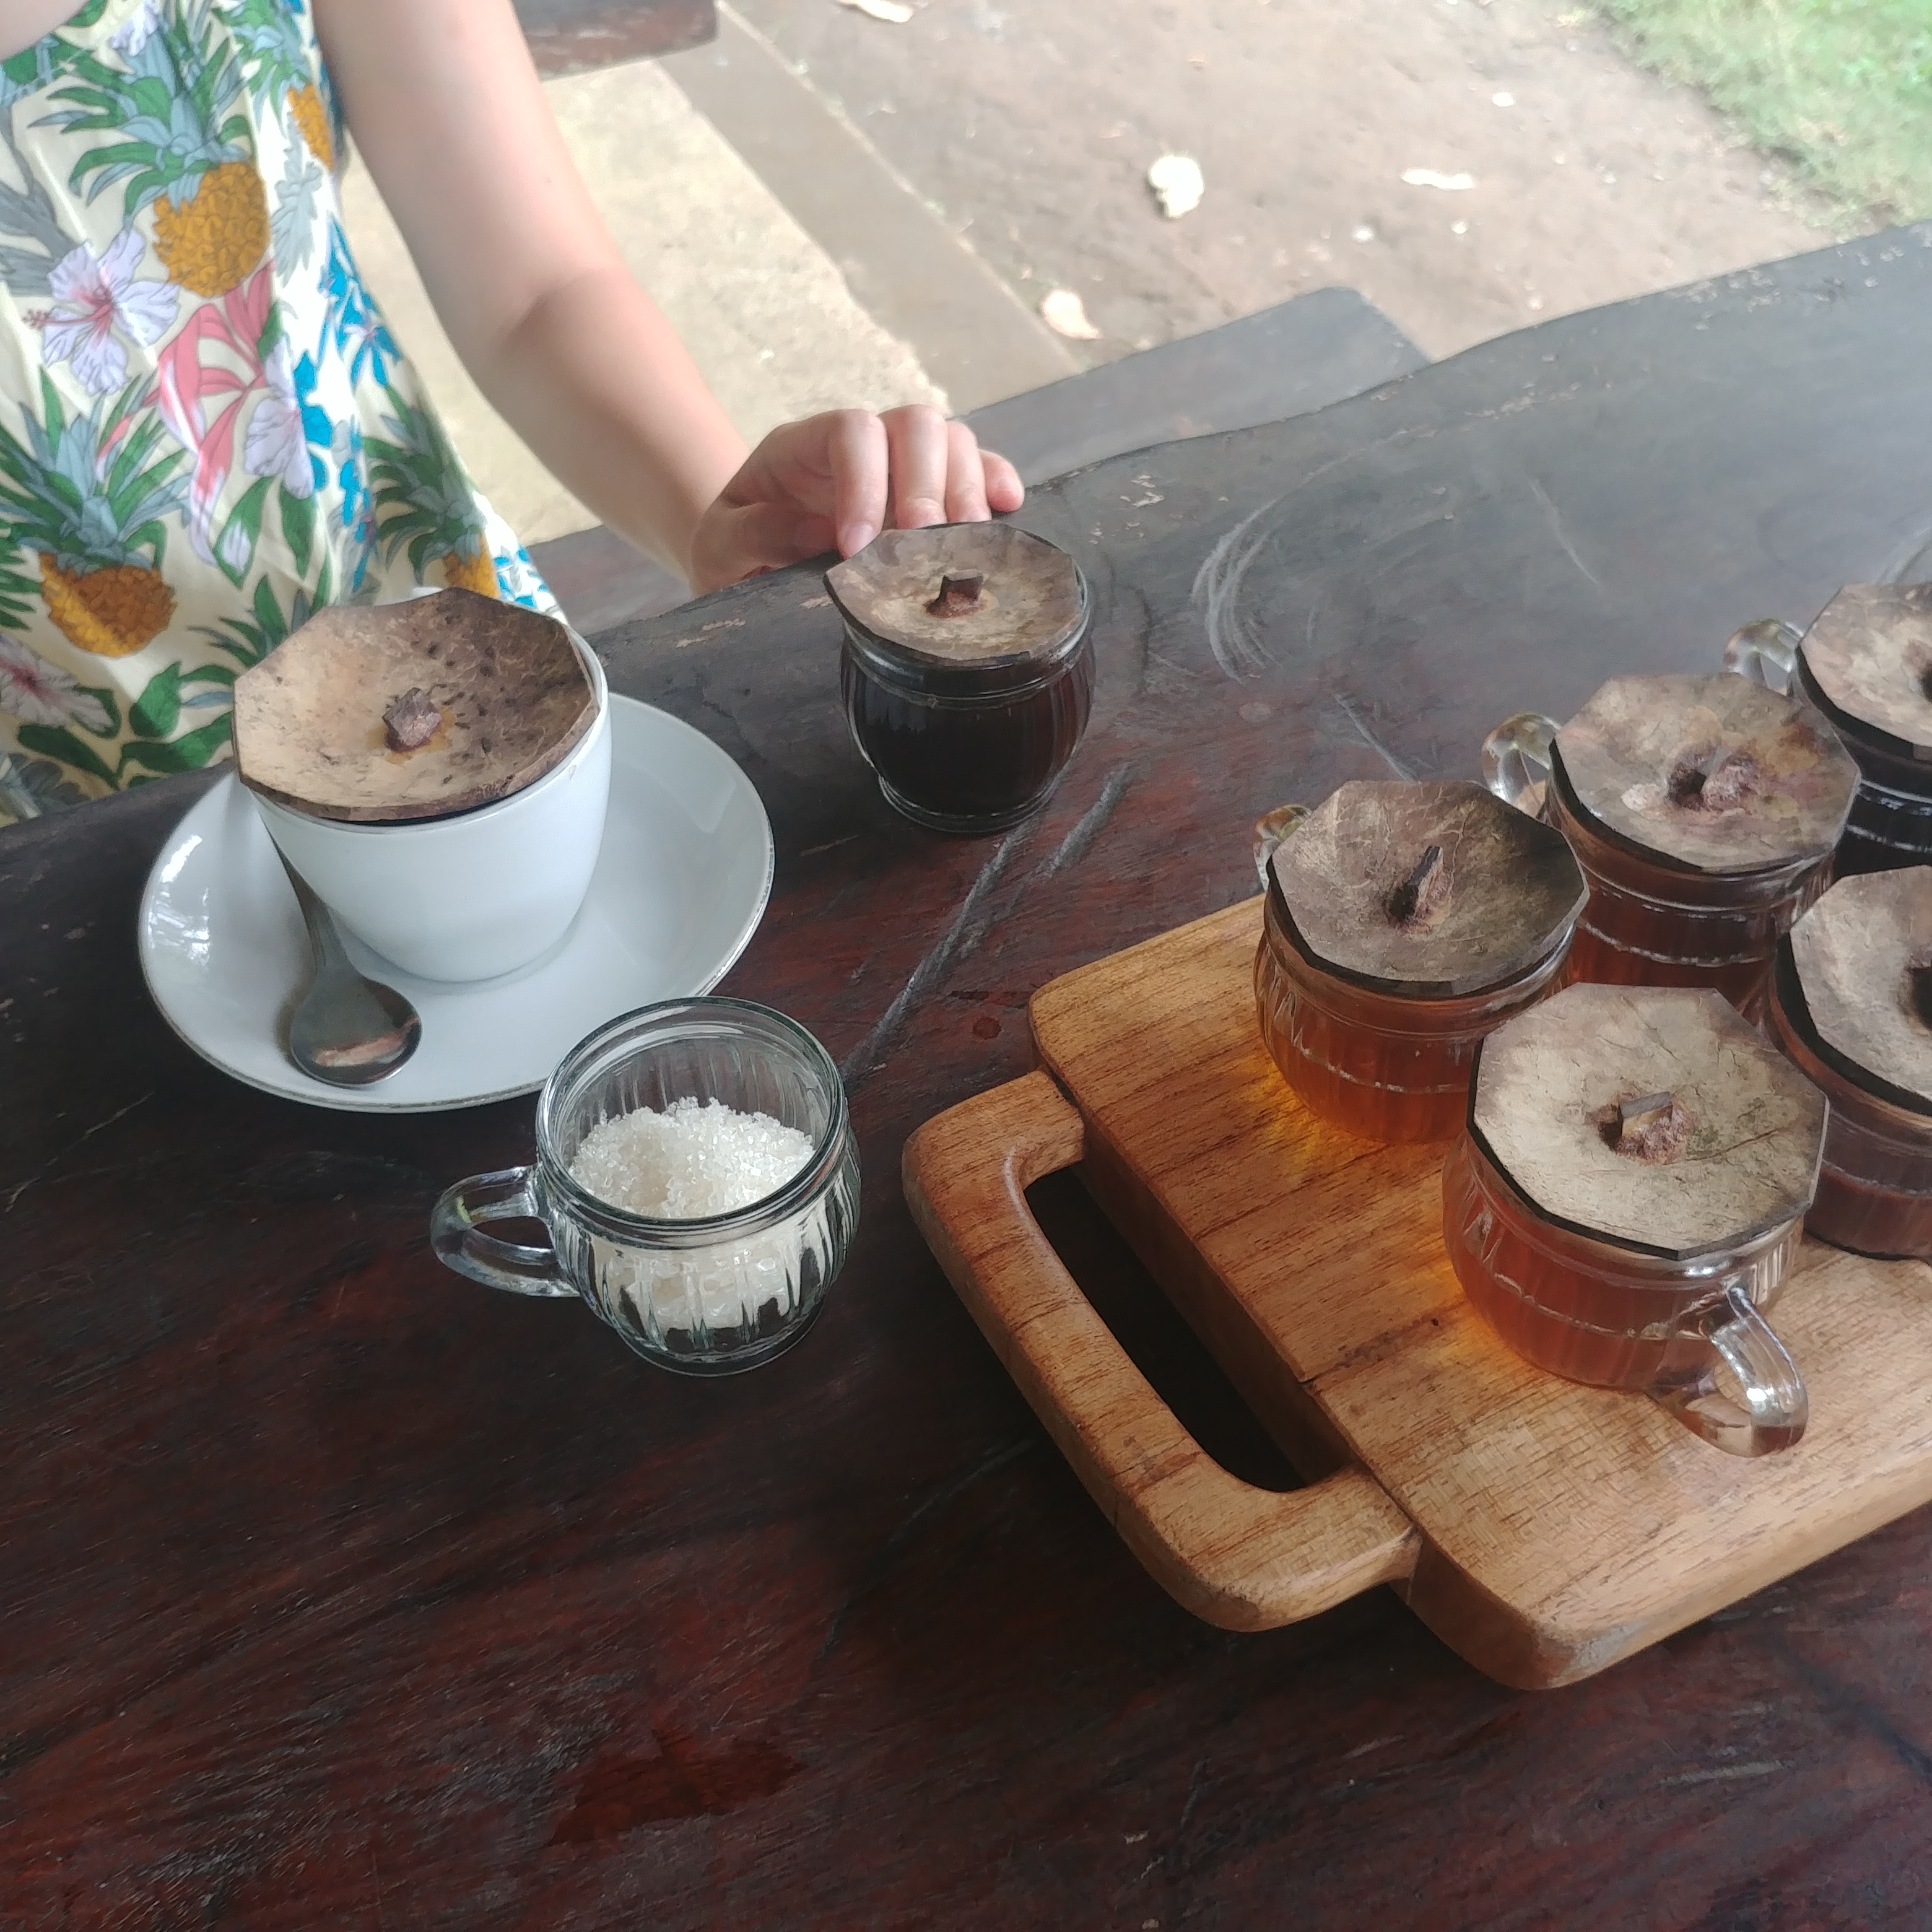 발리에서 르왁커피를 마시면 안되는 이유 Ceking Sari Luwak Coffee